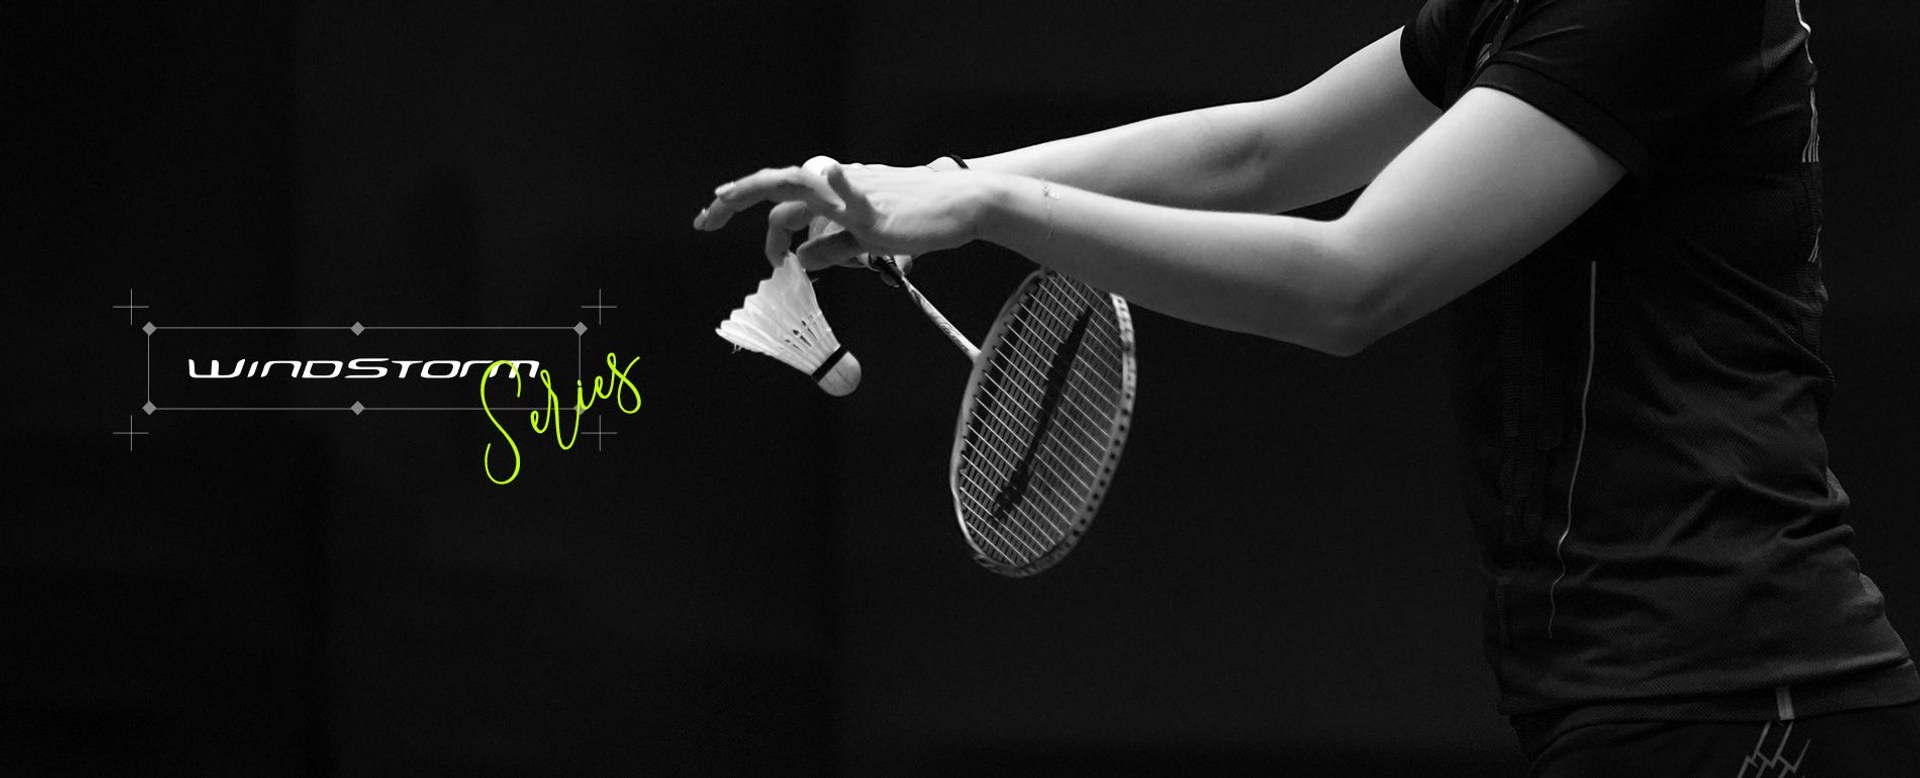 Windstorm Series - Badminton Racket